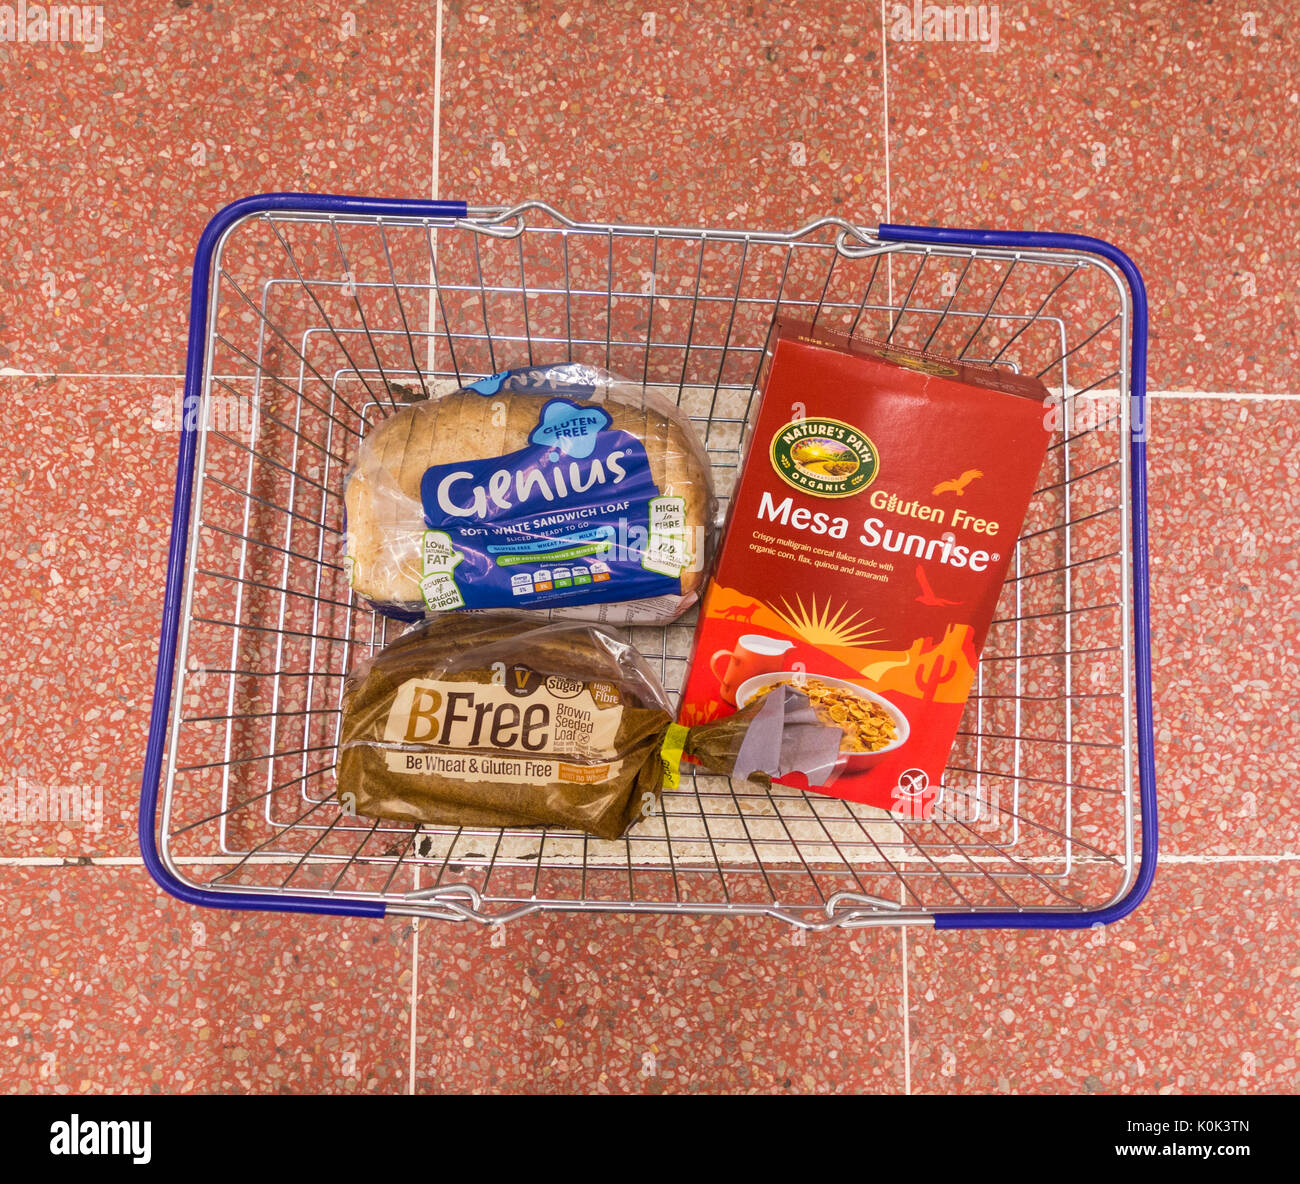 Senza glutine pane e cereali nel carrello nel supermercato Tesco. Regno Unito Foto Stock